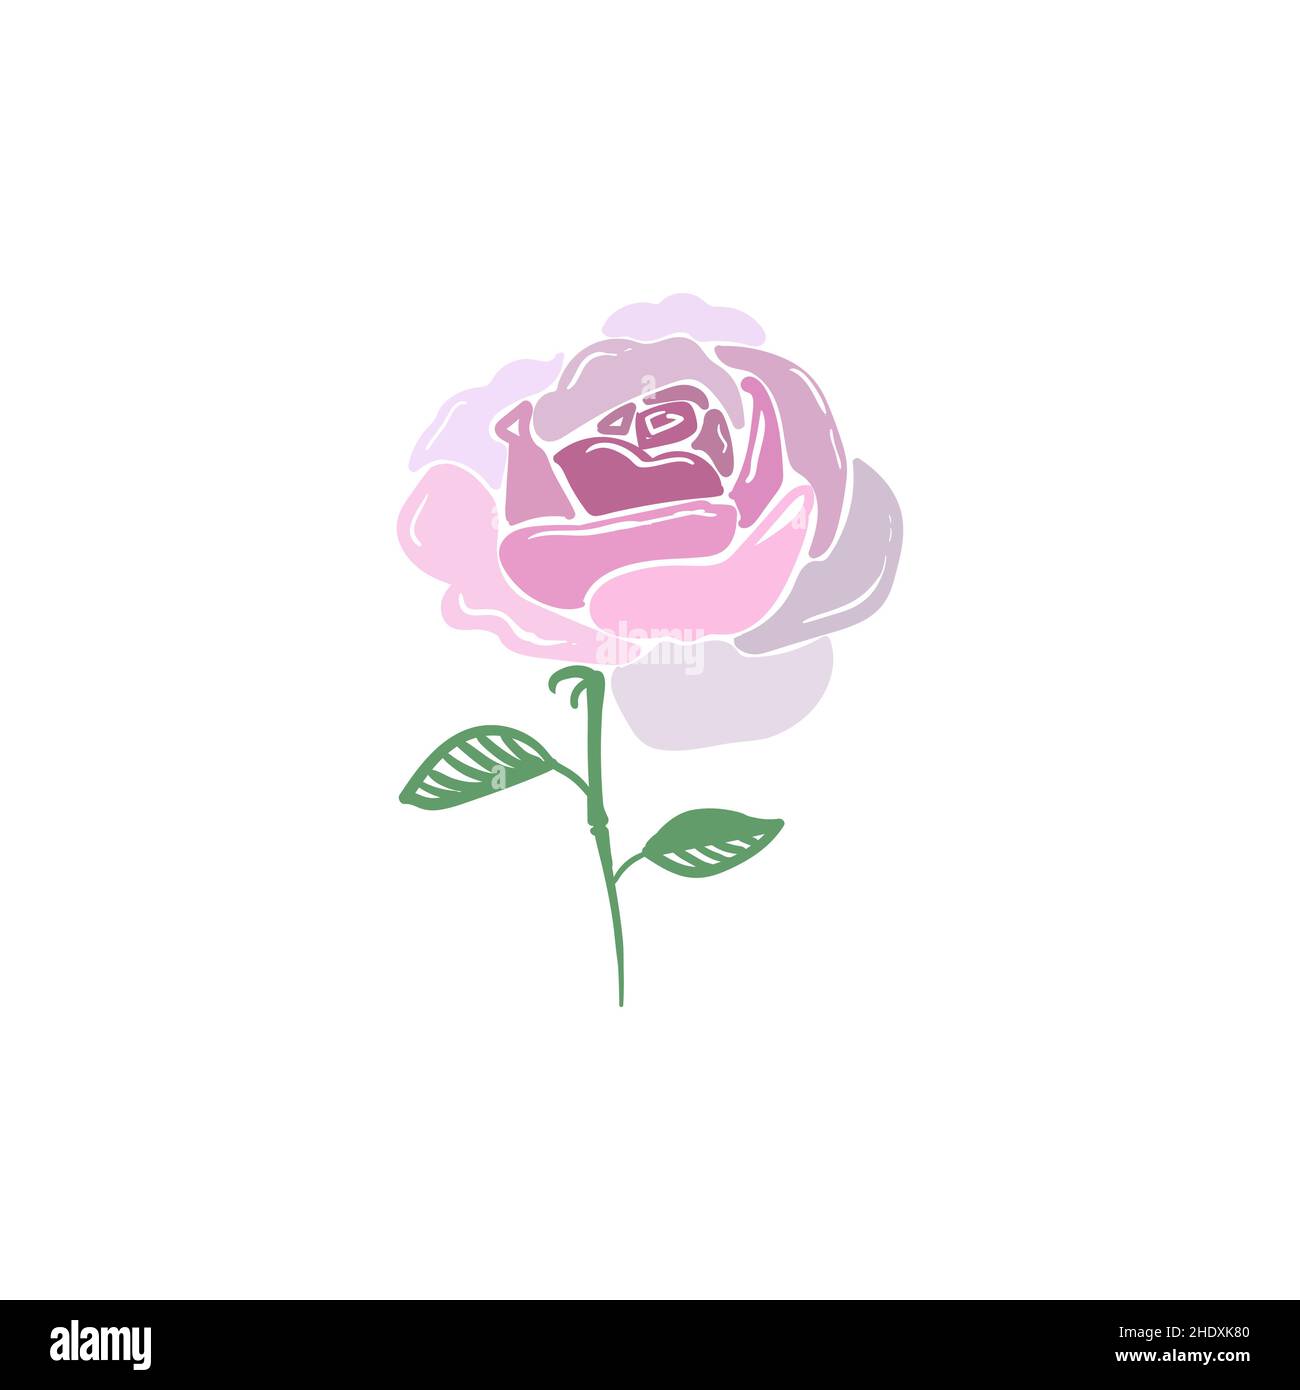 Rose abstraite isolée sur fond blanc.Illustration de stock tendance pour votre design.Illustration vectorielle.éléments de conception de fleurs roses. Illustration de Vecteur